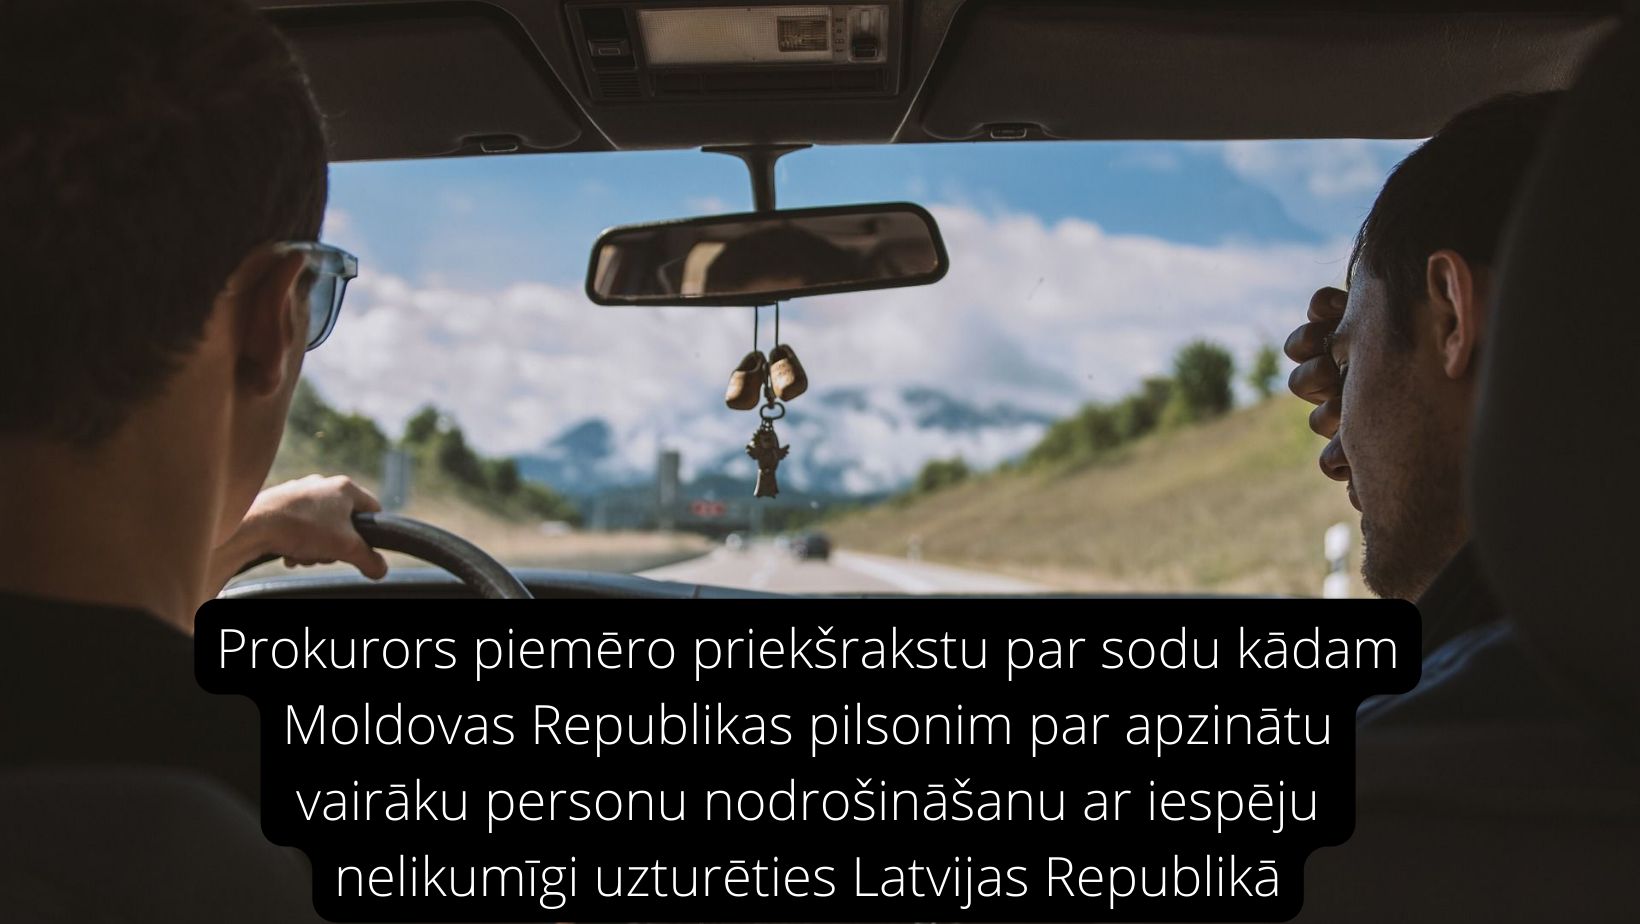 Attēls: Prokurors piemēro priekšrakstu par sodu kādam Moldovas Republikas pilsonim par apzinātu vairāku personu nodrošināšanu ar iespēju nelikumīgi uzturēties Latvijas Republikā